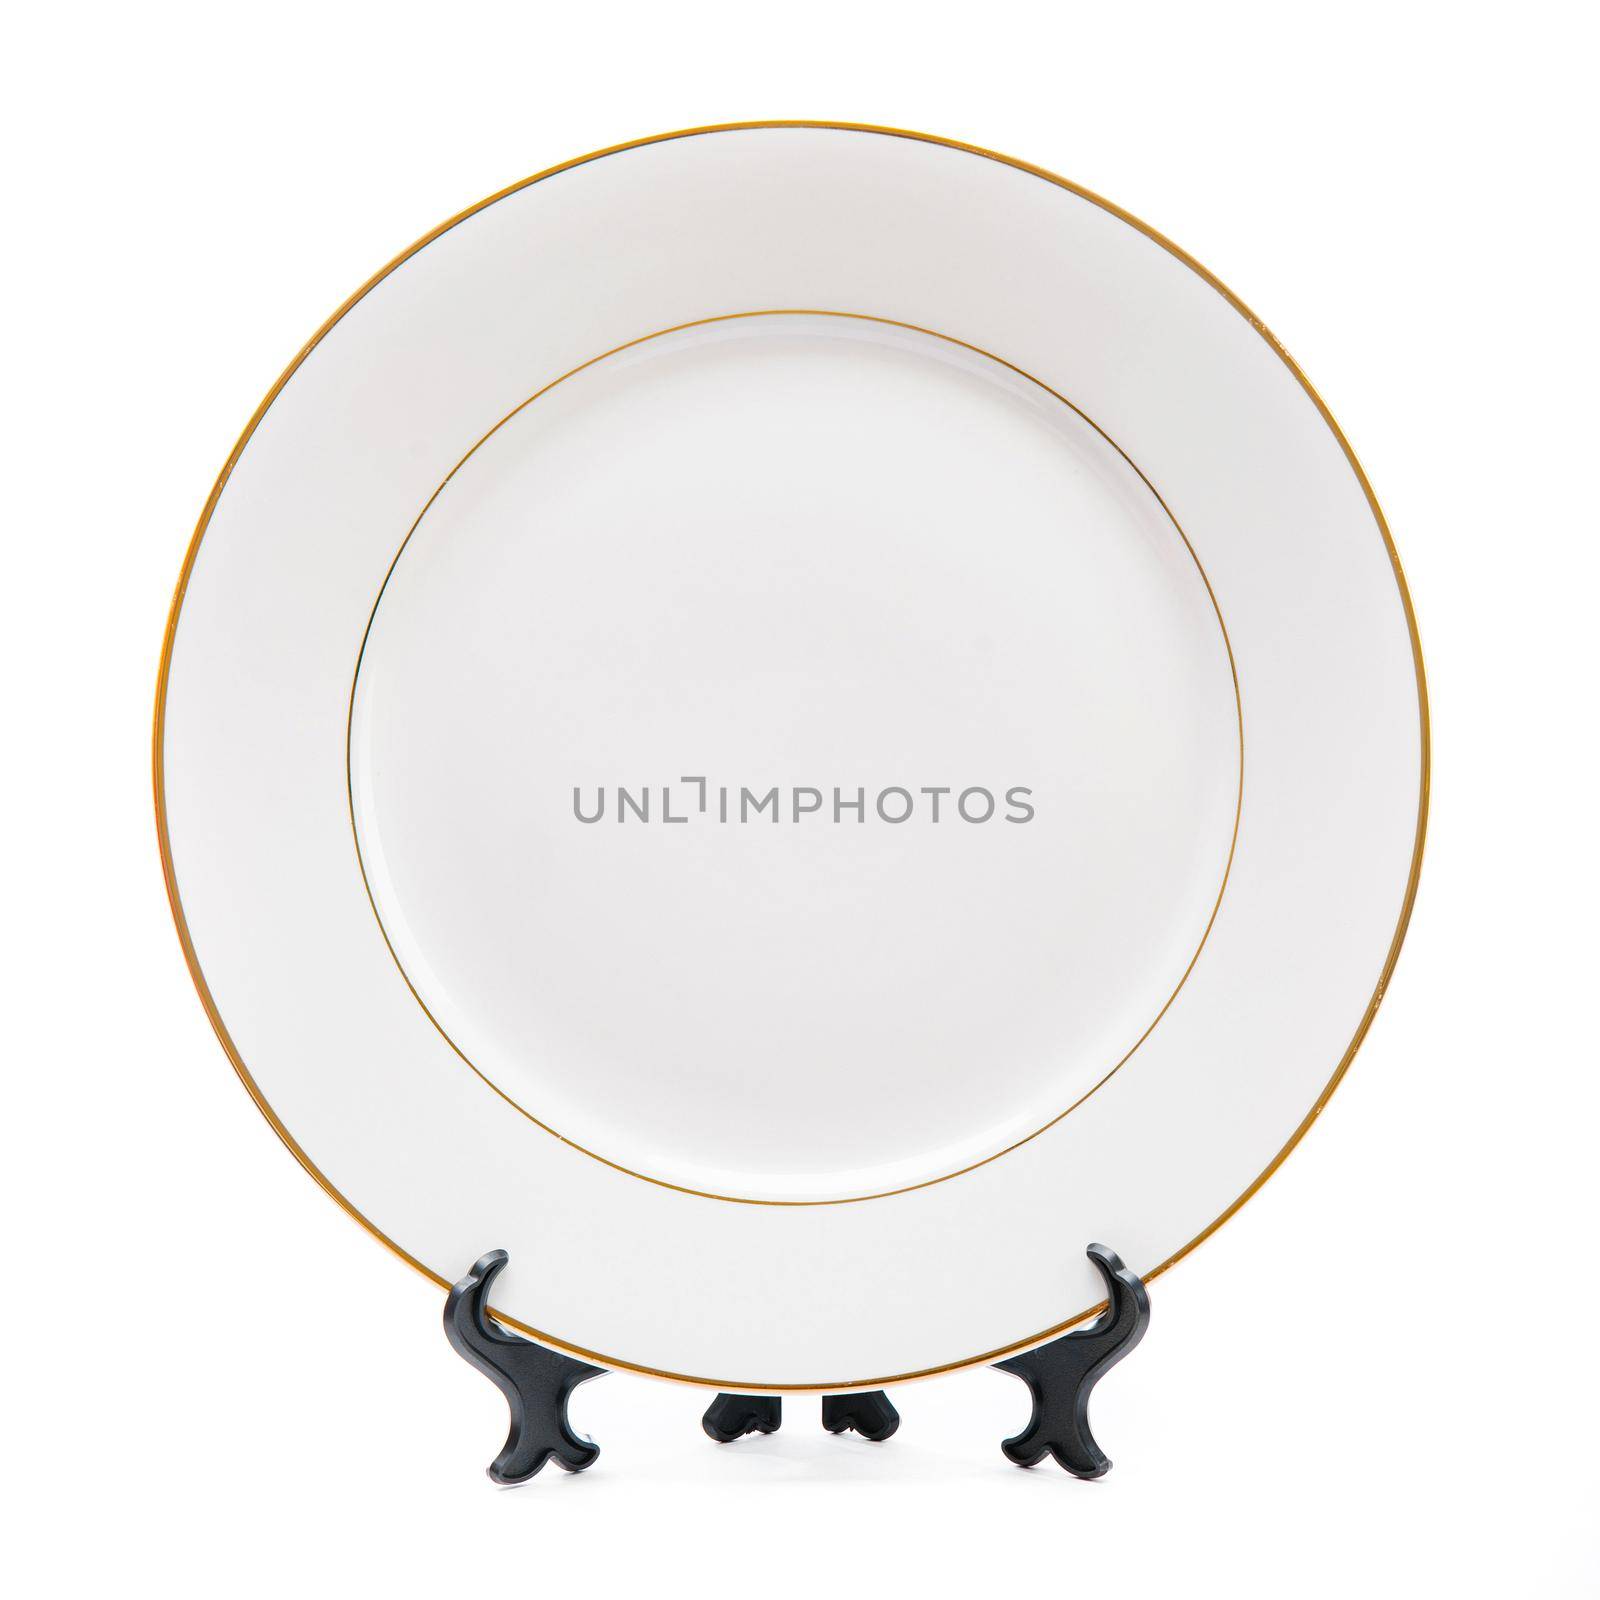 Plate on white by GekaSkr